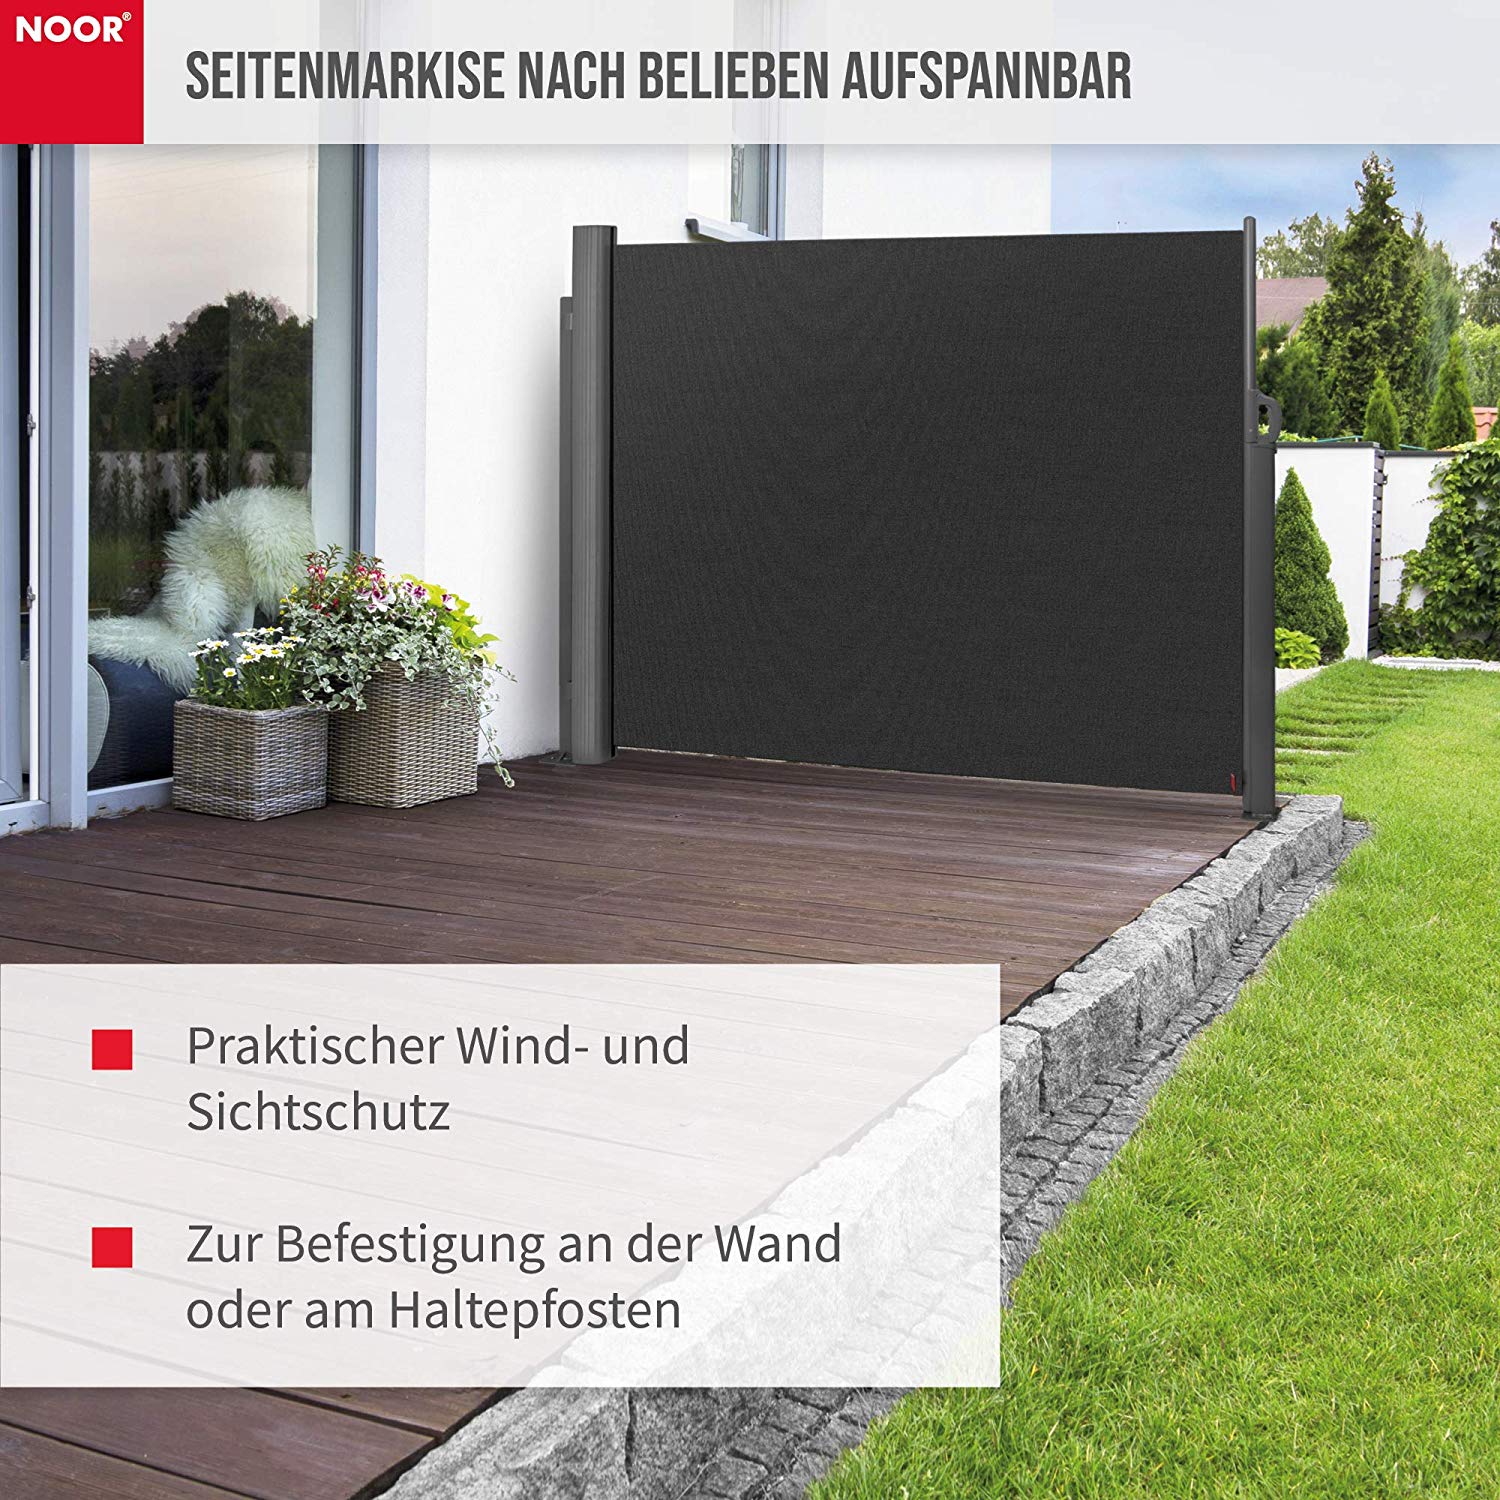 Exklusive Gartendeko Genial Noor Seitenmarkise Exklusiv 160×350 Cm Anthrazit Sichtschutz